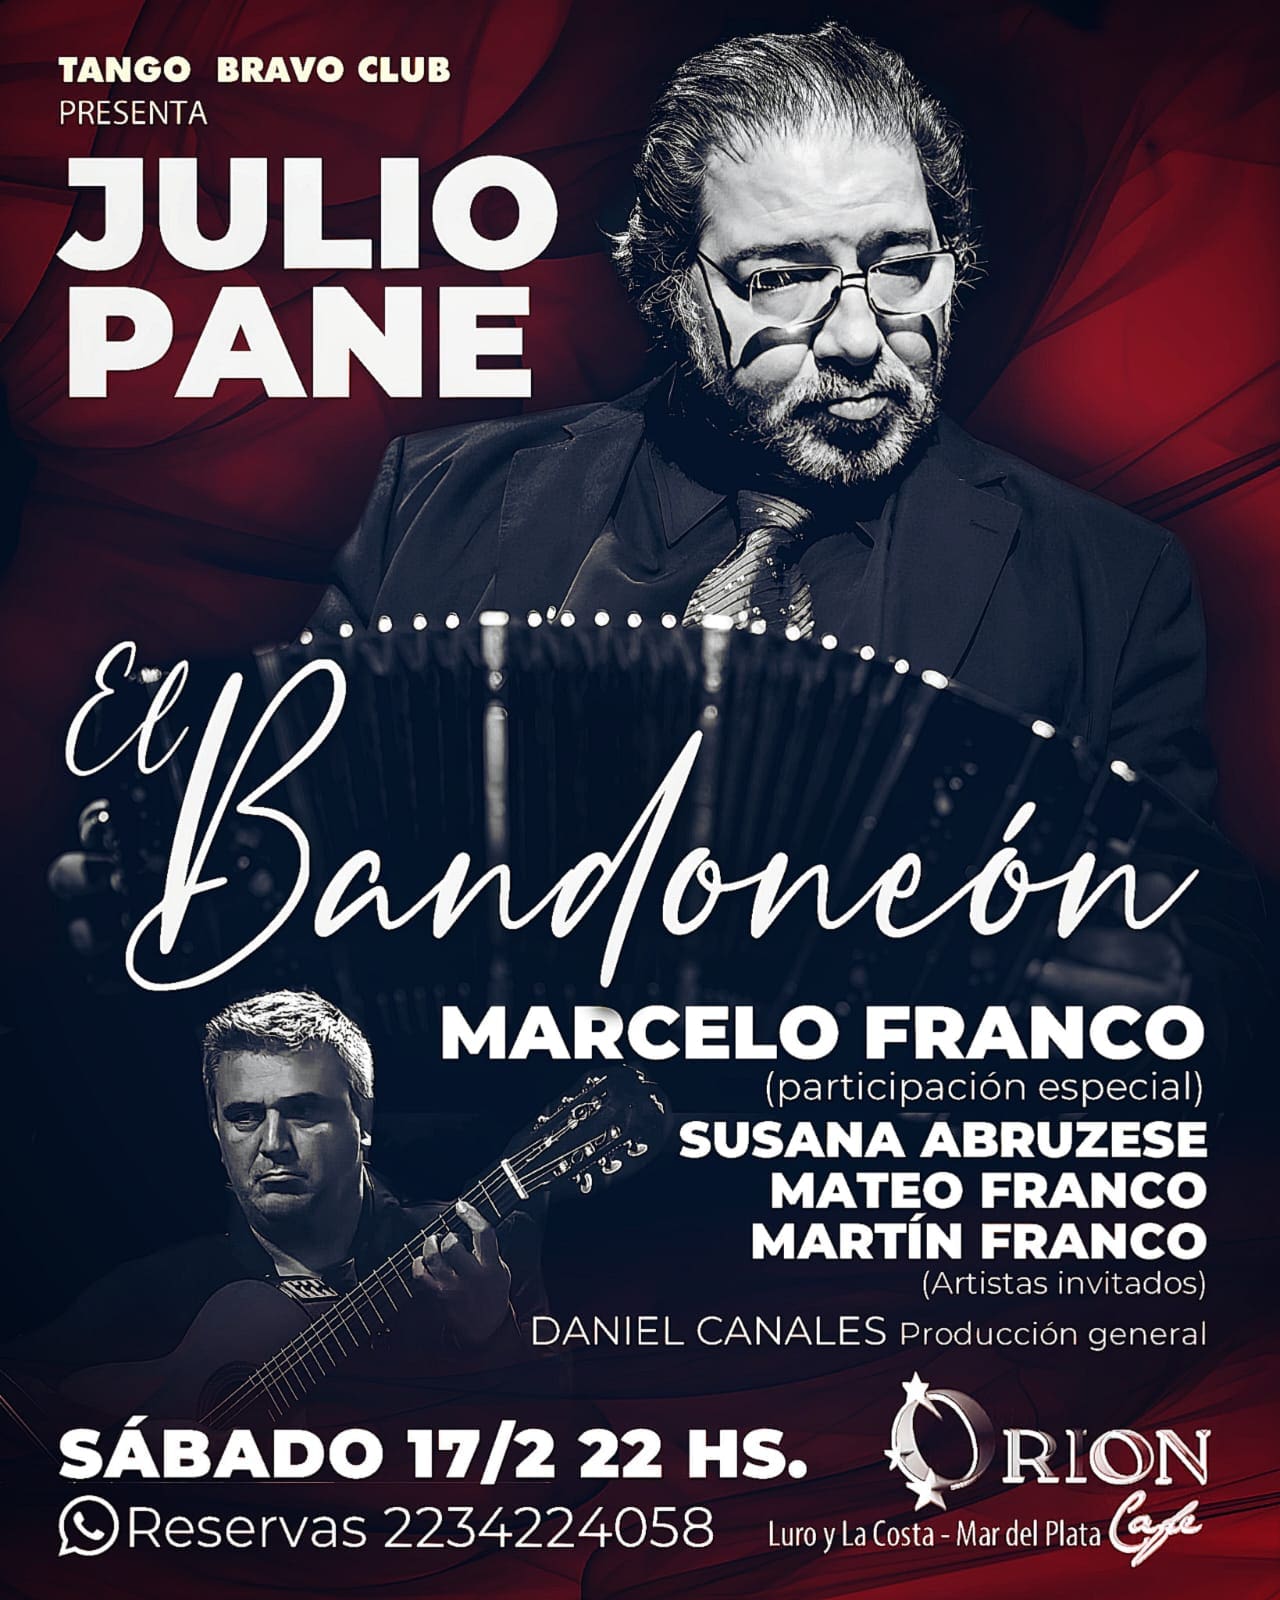 Tango Bravo Club presenta a Julio Pane en una noche de tango para el recuerdo